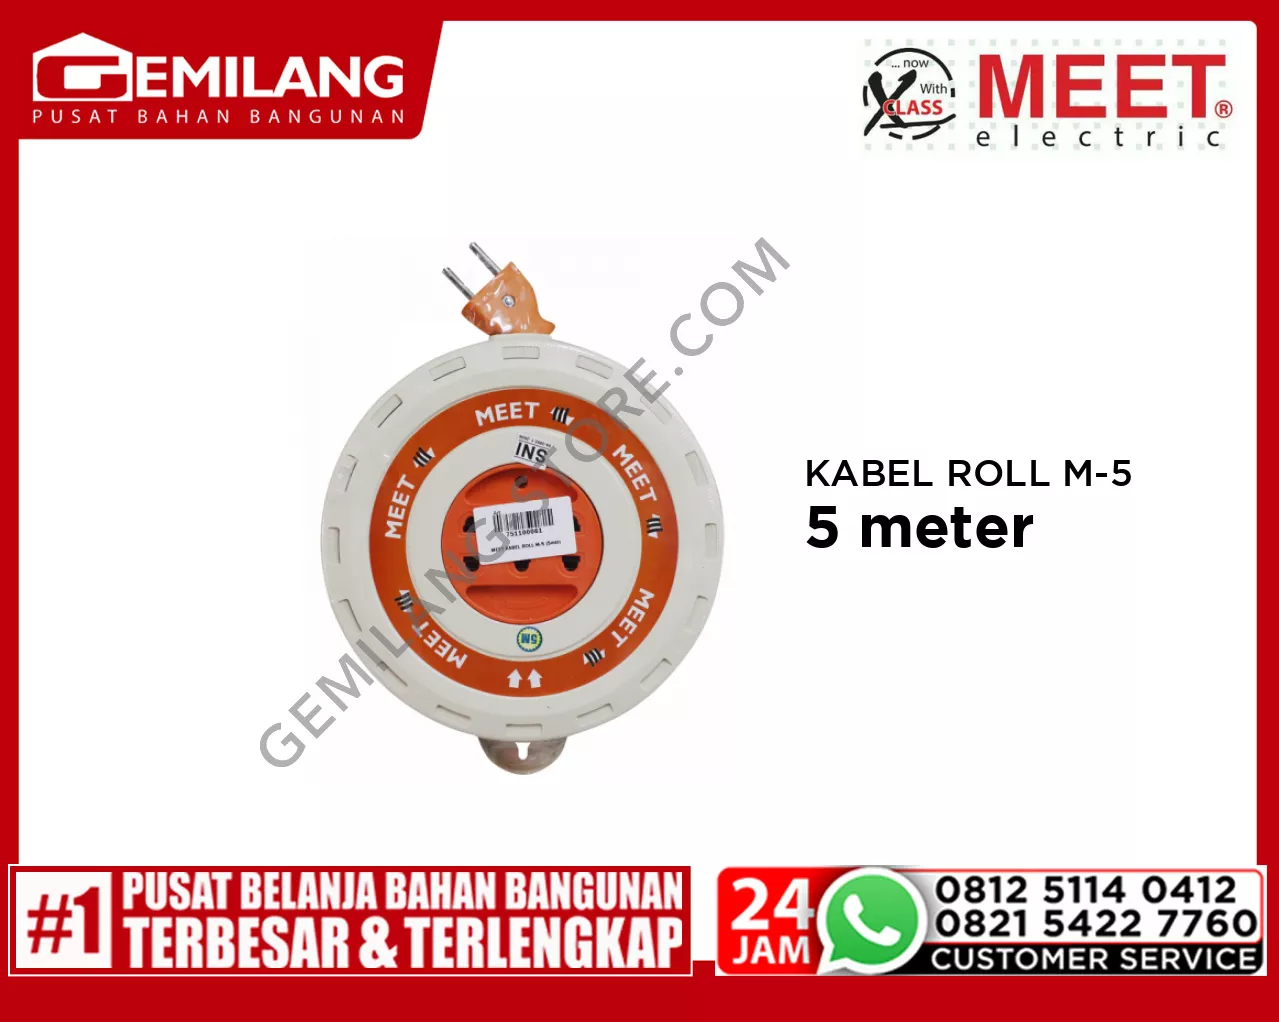 MEET KABEL ROLL M-5 (5mtr)